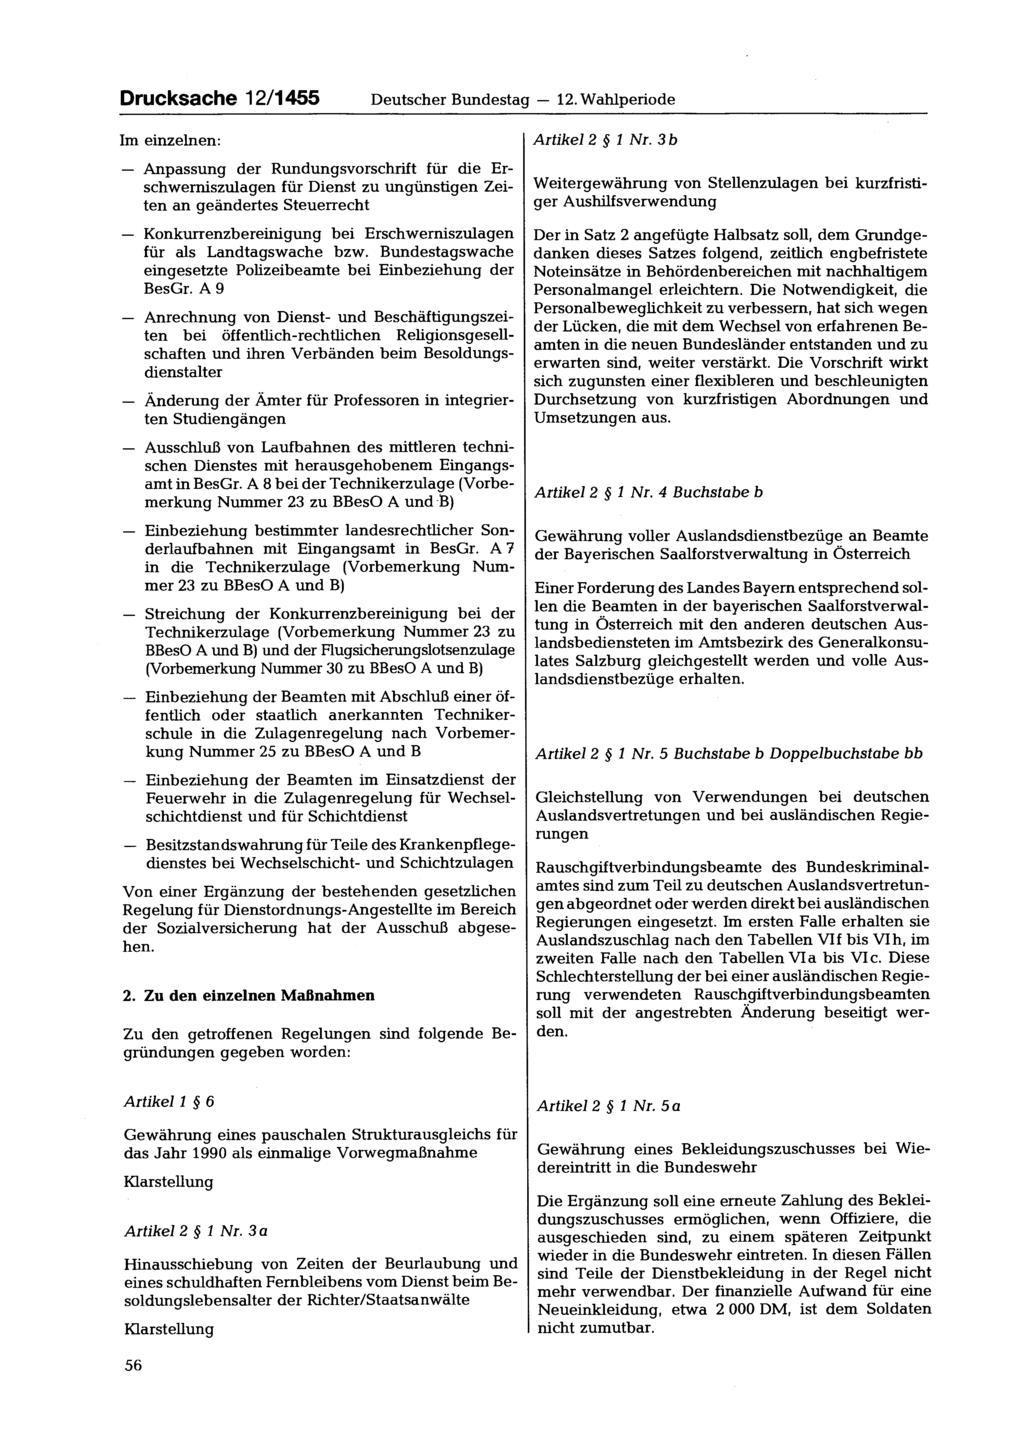 Drucksache 12/1455 Im einzelnen: Deutscher Bundestag 12. Wahlperiode Artikel 2 1 Nr.